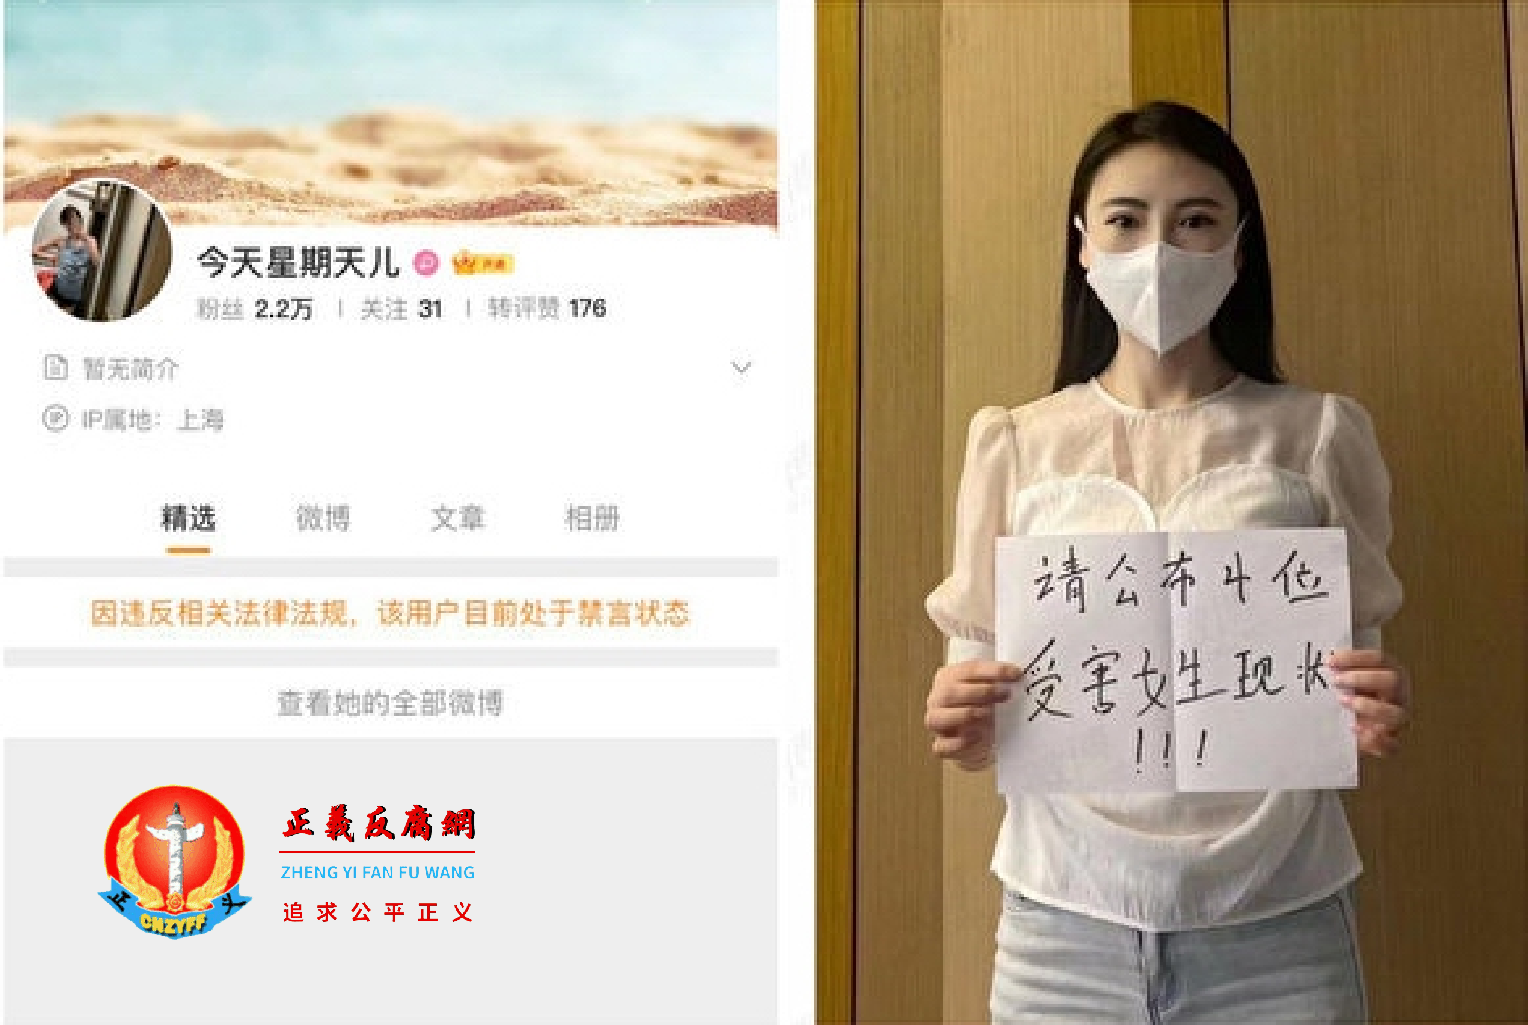 上海网友公开要求唐山警方公布4位女受害人现况 网友微博账号被封